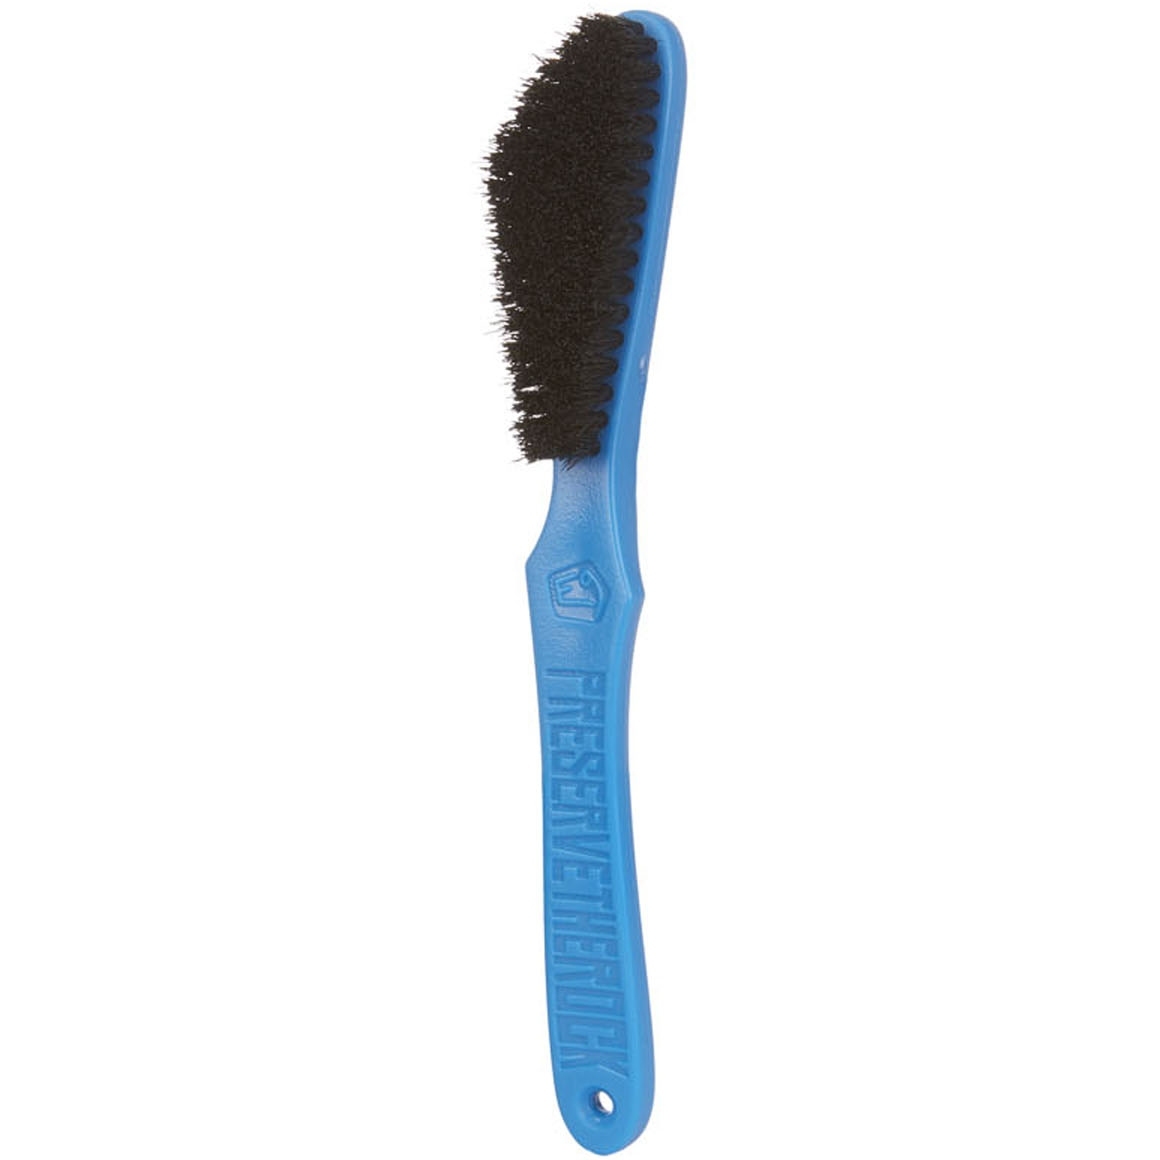 Produktbild von E9 Brush Kletterbürste - Blau